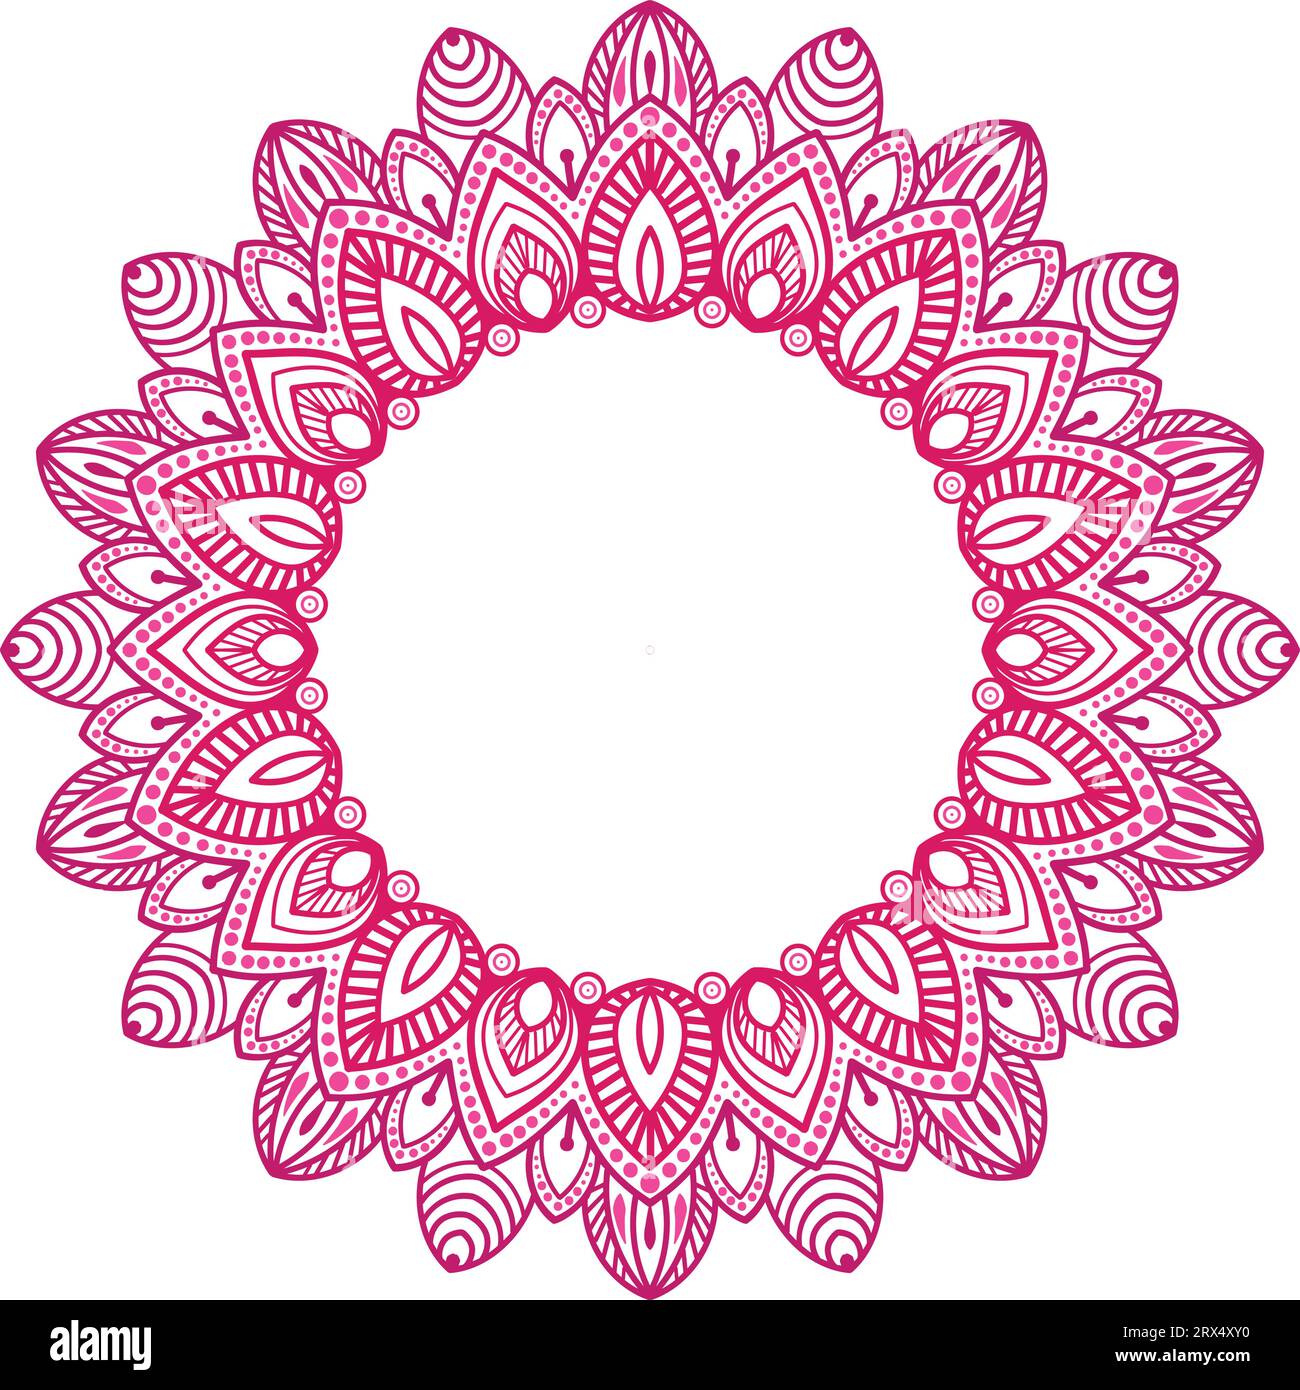 Mandala Rahmendesign orientalisches geometrisches Muster mit traditioneller Kunst für die Festivaldekoration, Spiritualität bezogene Dekoration. Stock Vektor